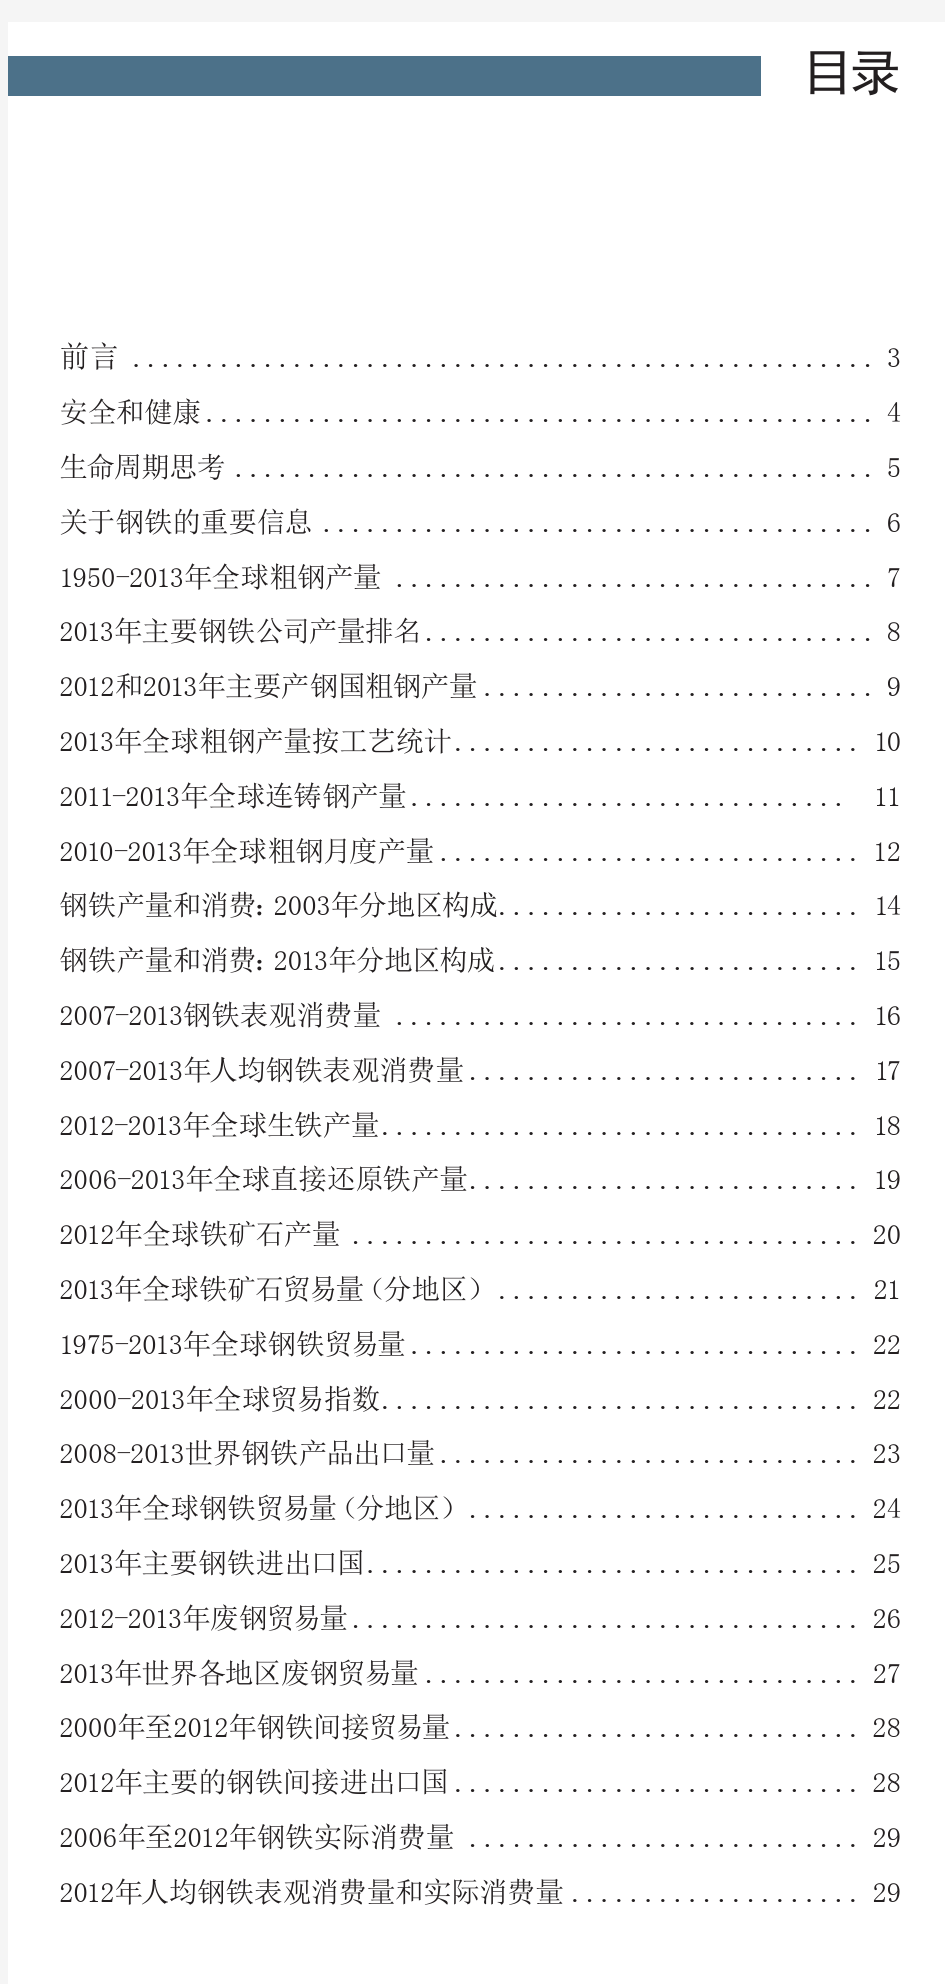 2014年版世界钢铁统计数据.pdf